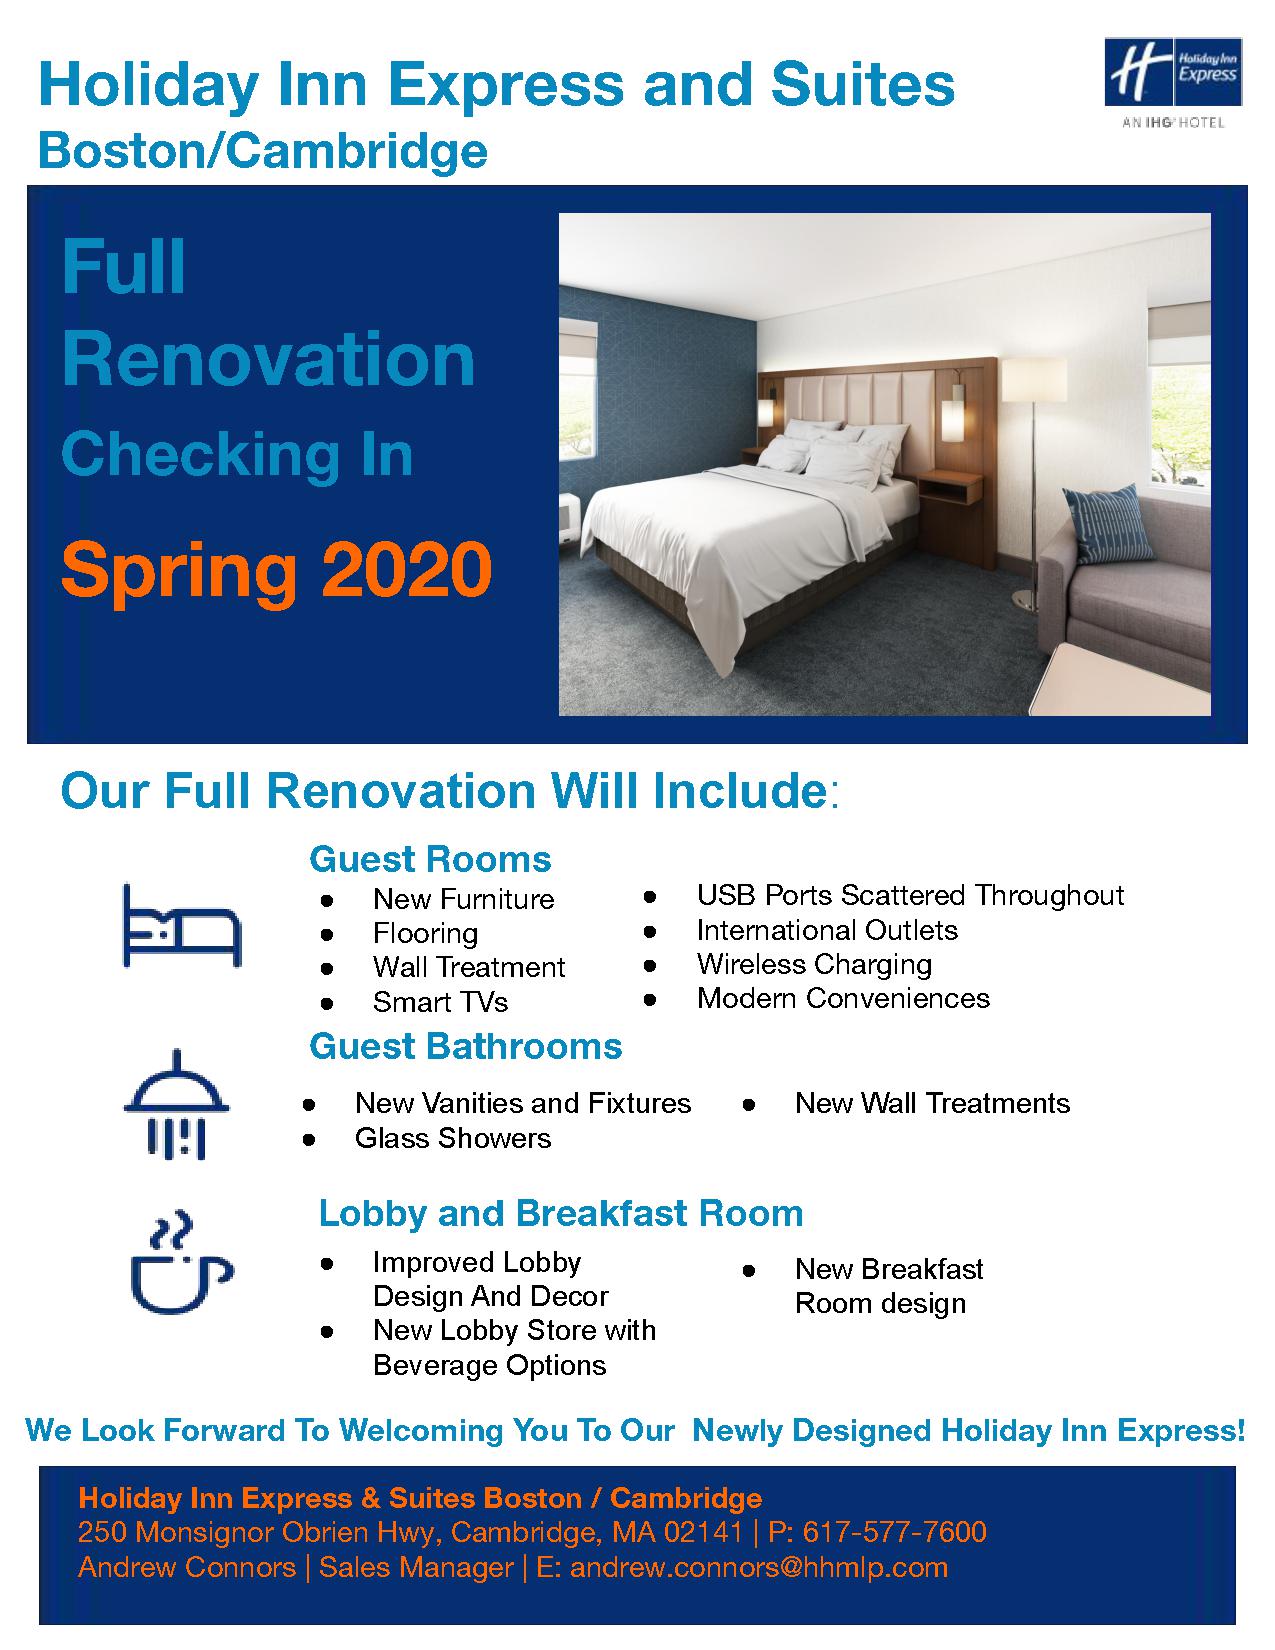 Holiday Inn Express Cambridge Renovation Flyer 2020 